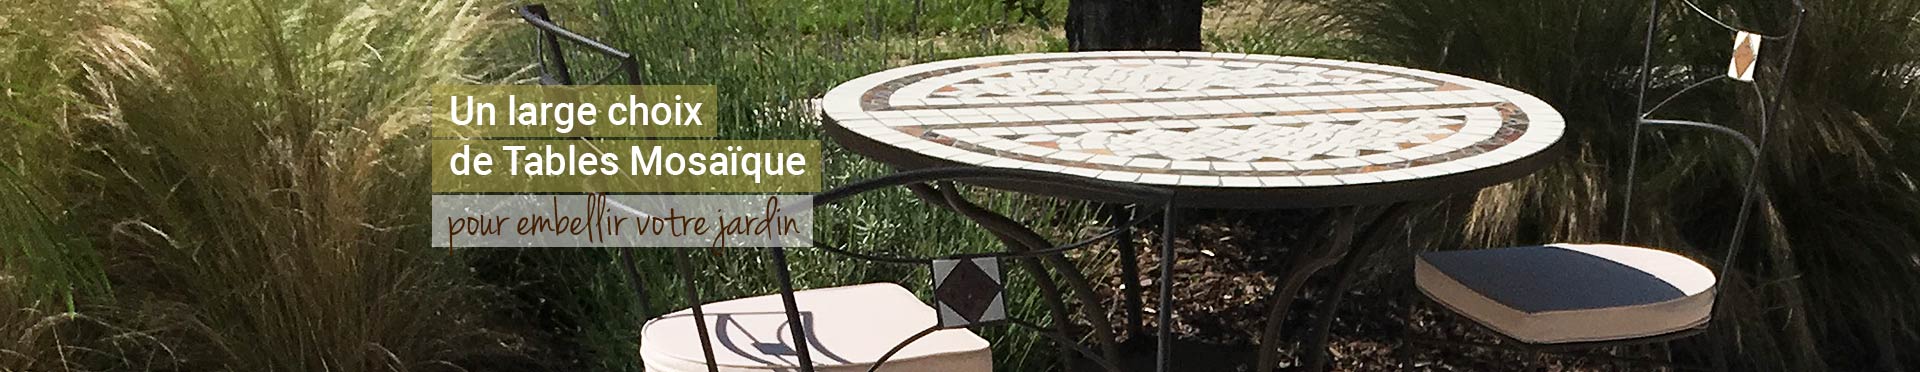 Table mosaïque ronde pour embellir votre jardin